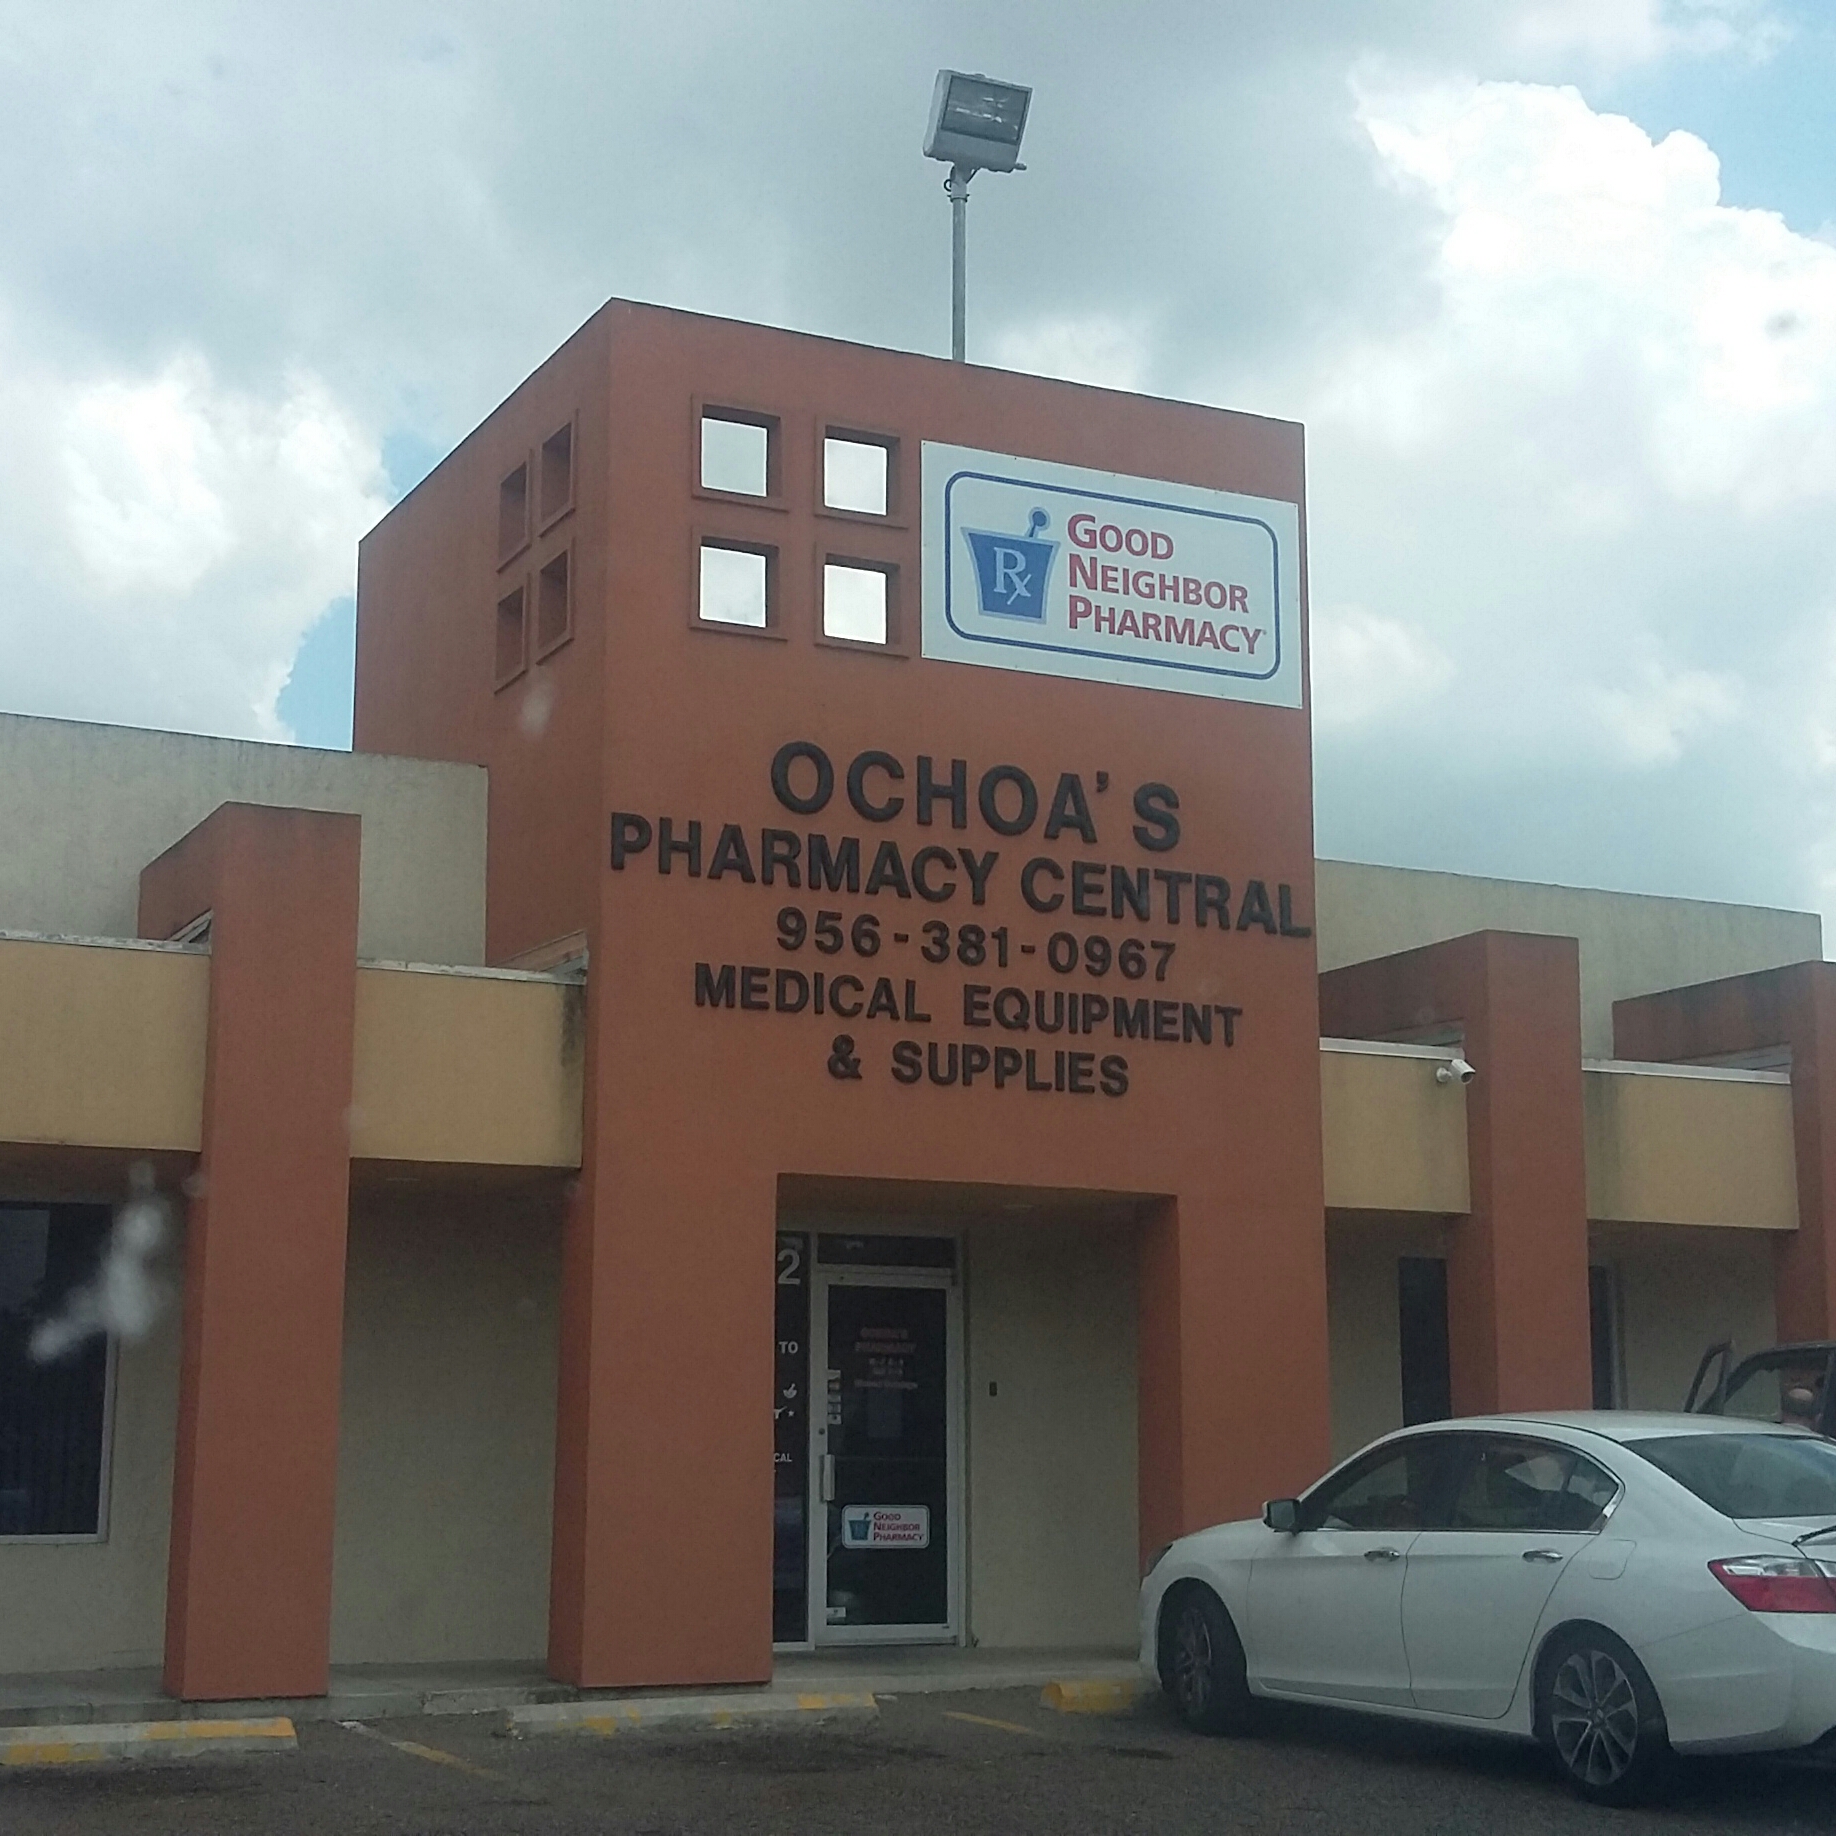 Ochoa's Pharmacy Central